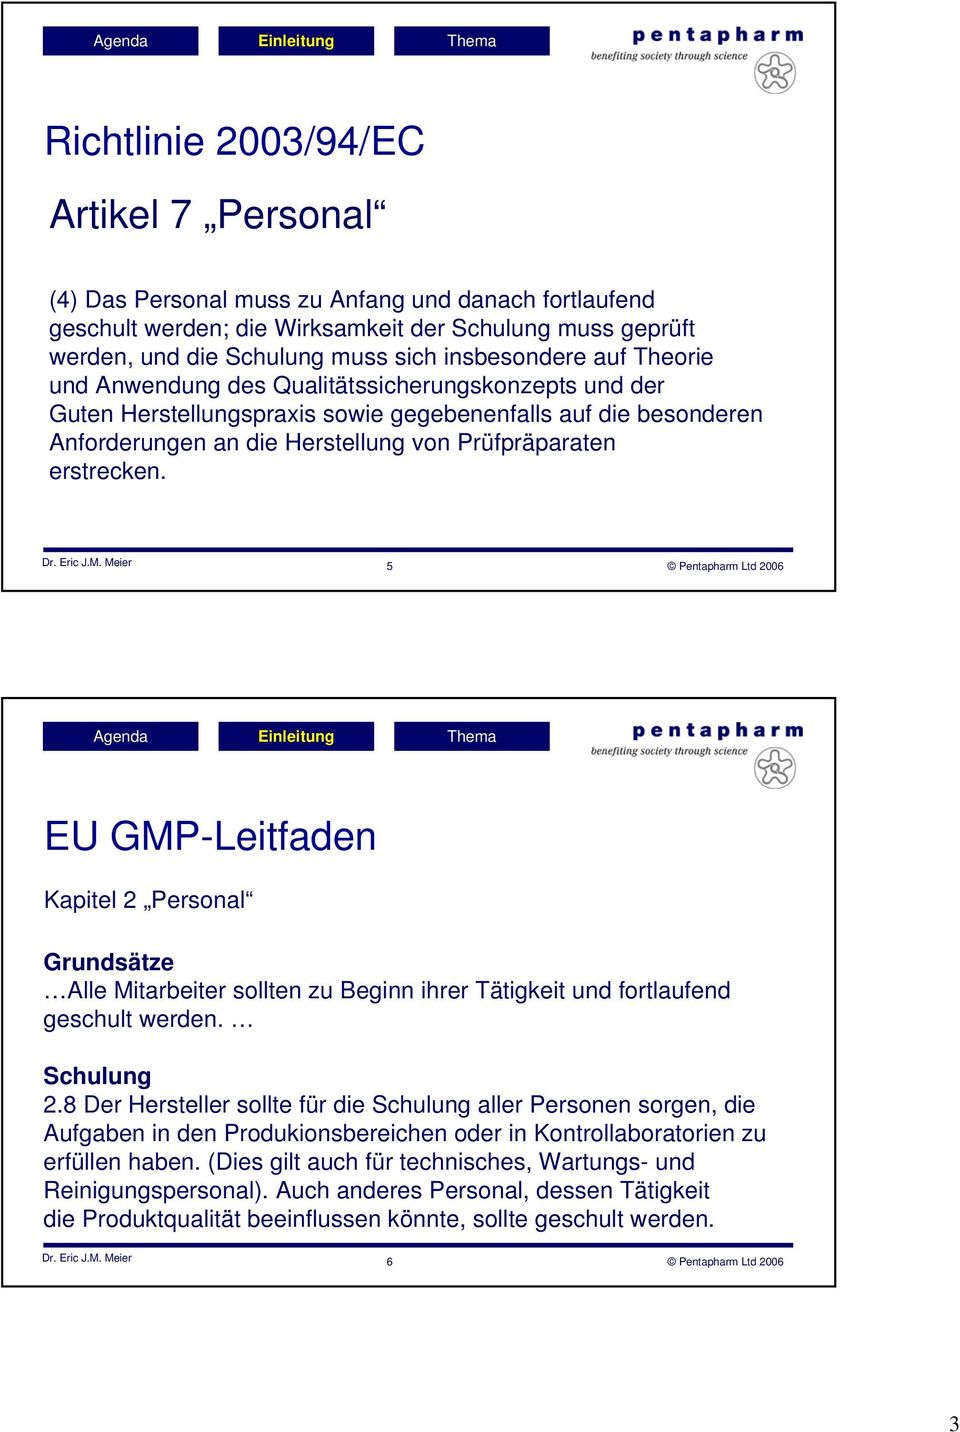 erstrecken. Dr. Eric J.M. Meier 5 Pentapharm Ltd 2006 EU GMP-Leitfaden Kapitel 2 Personal Grundsätze Alle Mitarbeiter sollten zu Beginn ihrer Tätigkeit und fortlaufend geschult werden. Schulung 2.